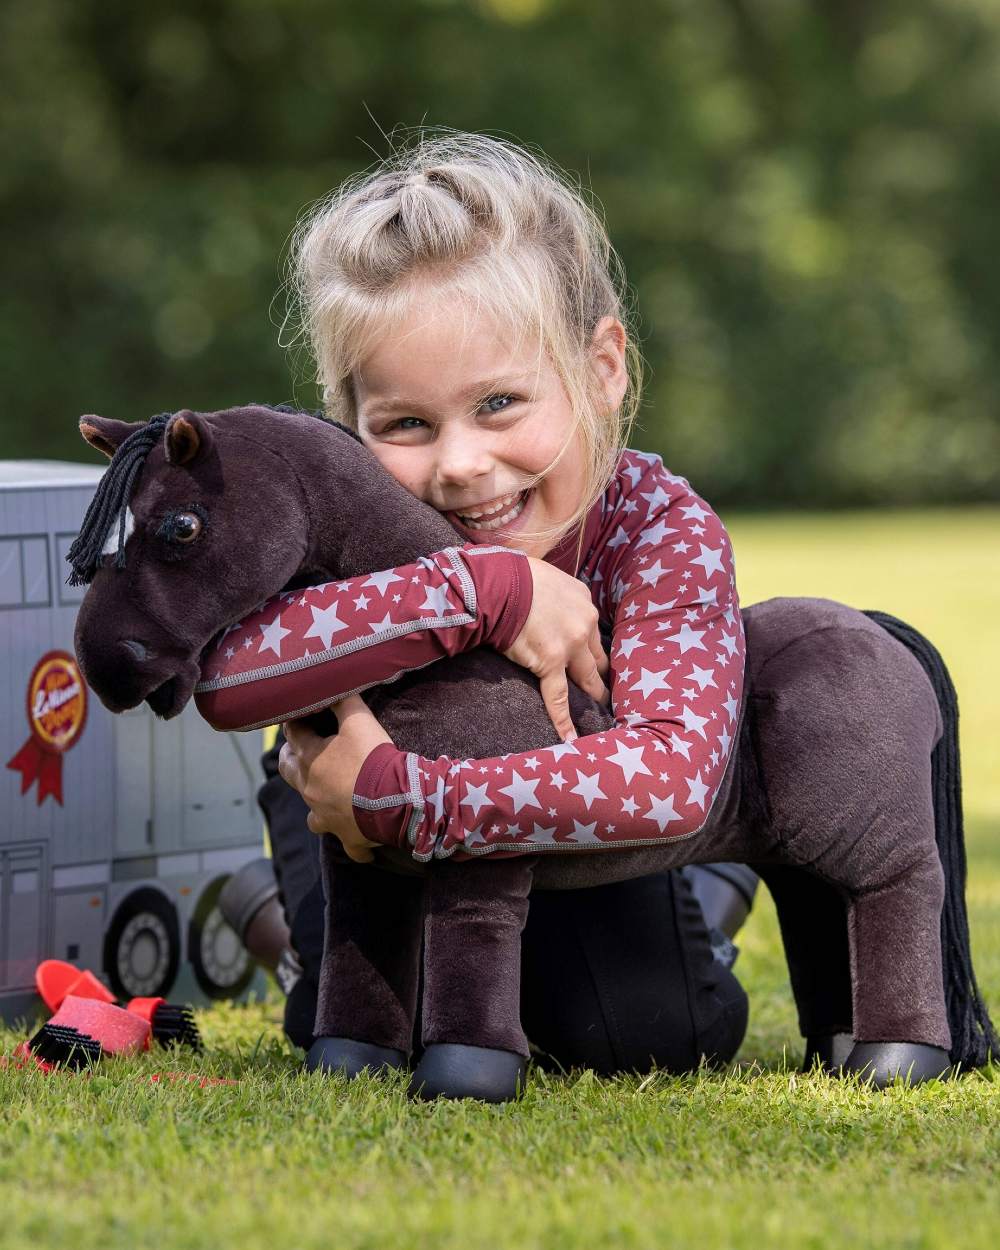 LeMieux Toy Pony Freya on grassy background 